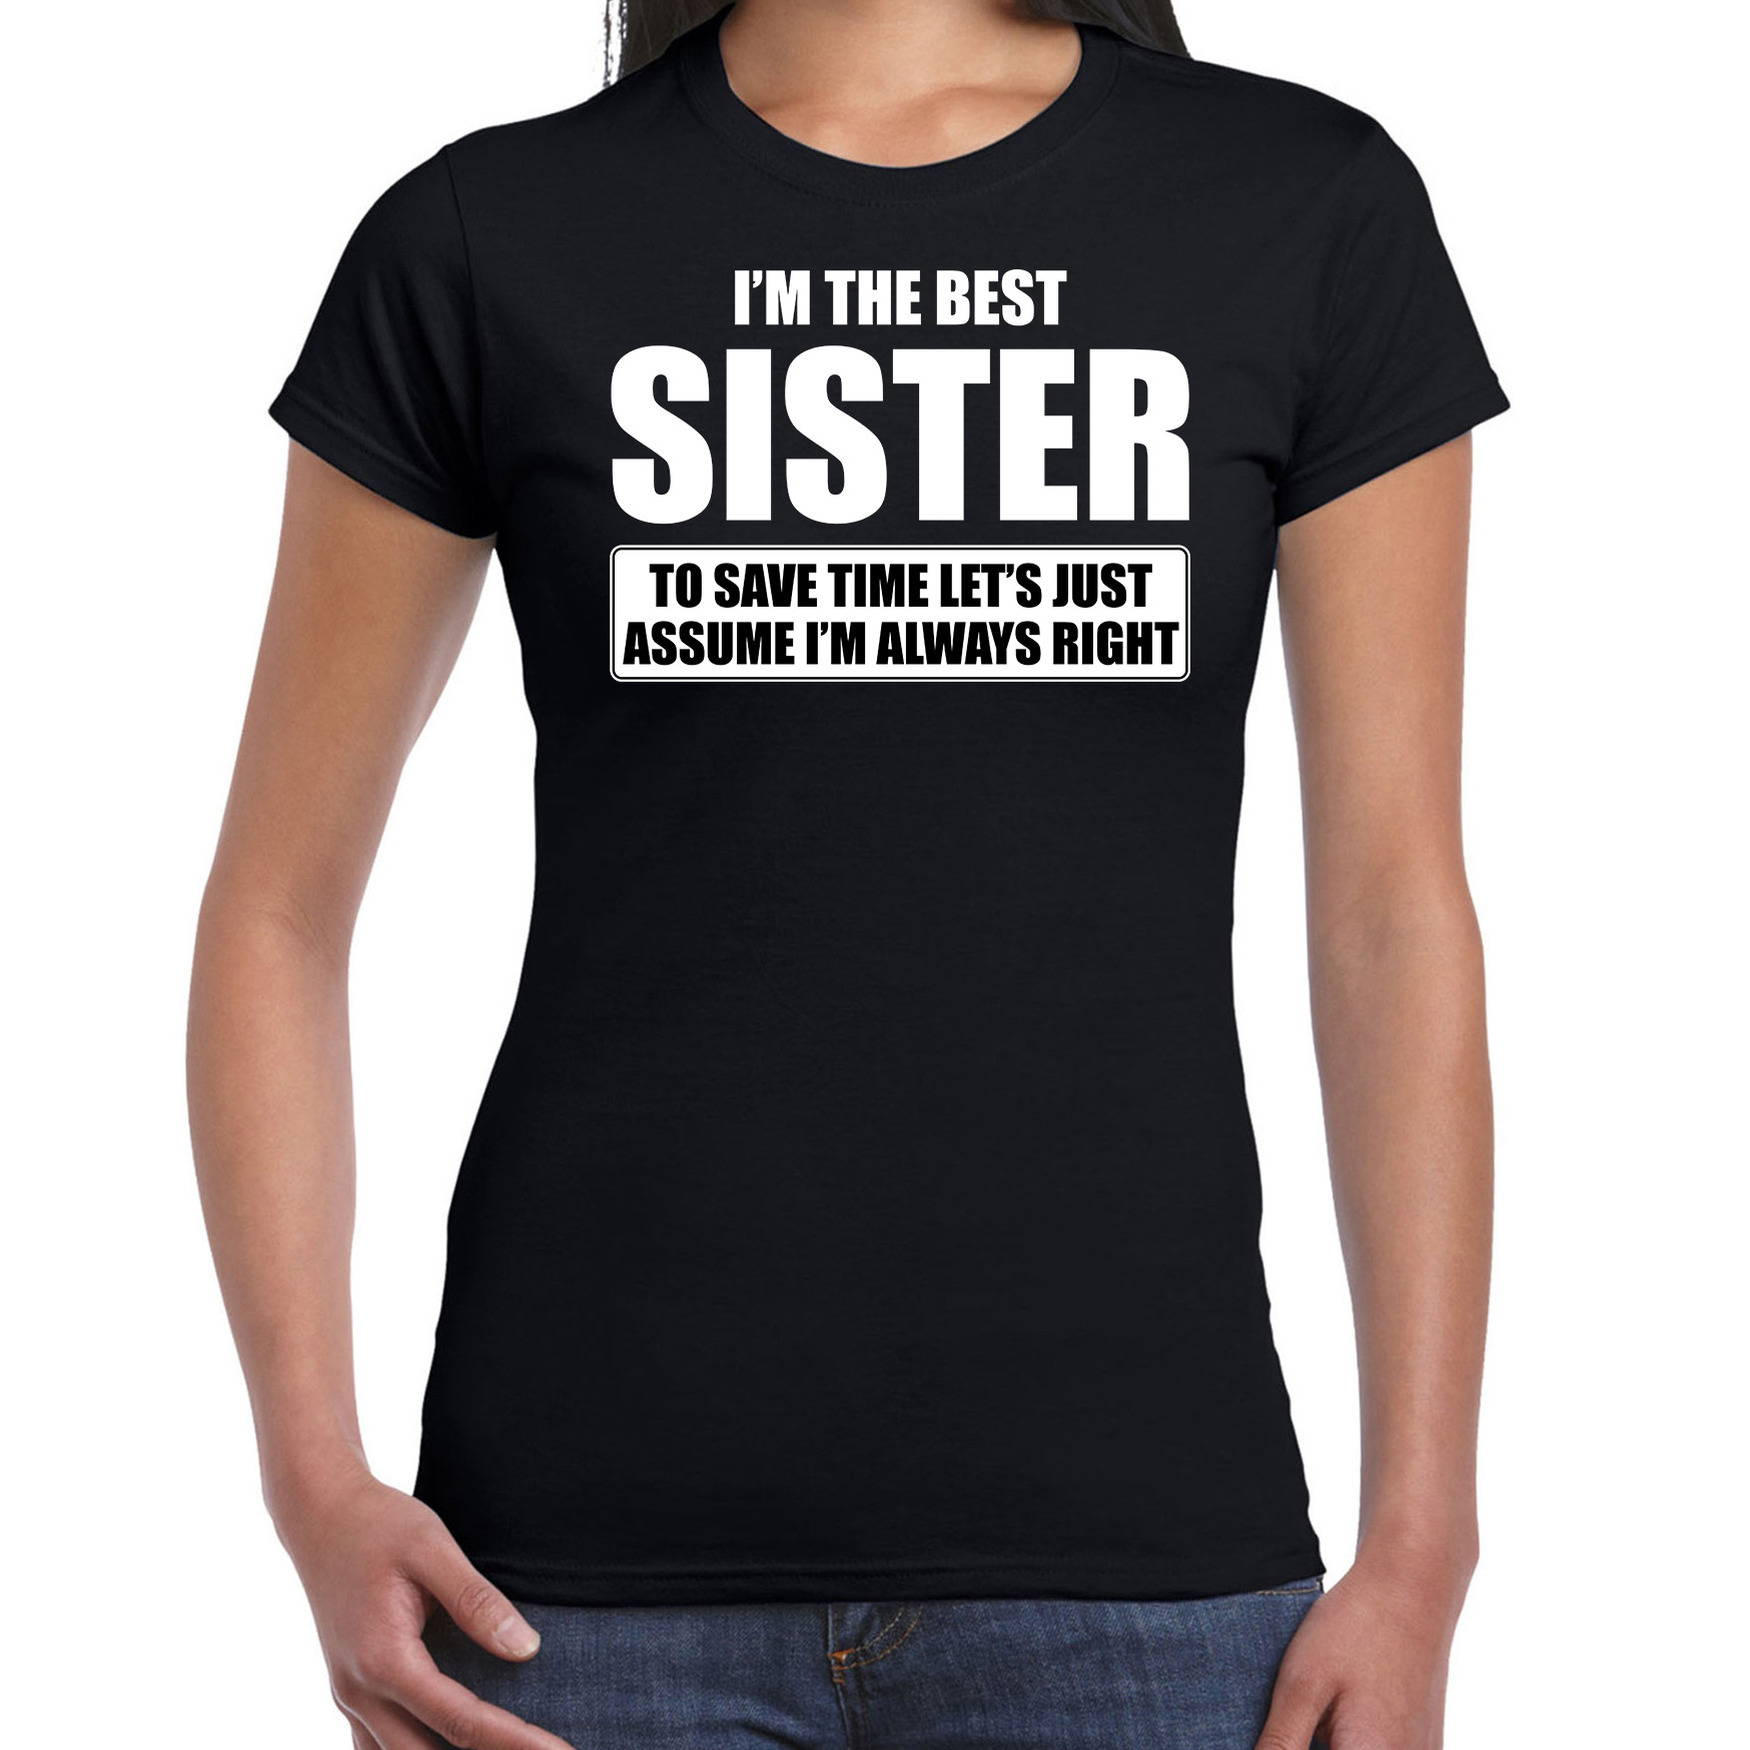 I'm the best sister t-shirt zwart dames - De beste zus cadeau